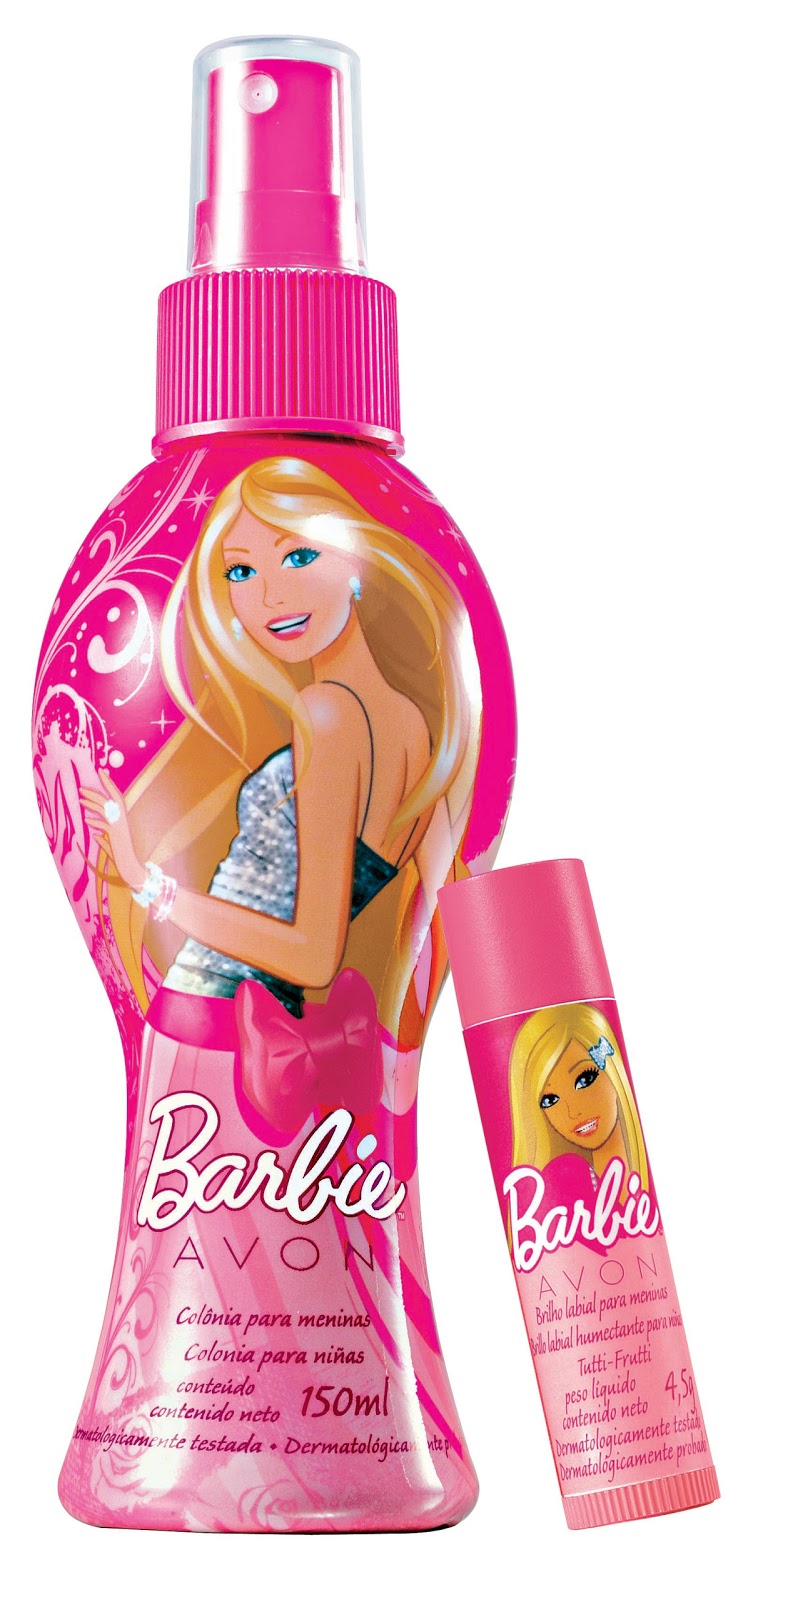 Парфюм для девочки. Барби эйвон туалетная вода. Barbie туалетная вода эйвон. Детские духи Барби. Детская косметика для девочек Барби.